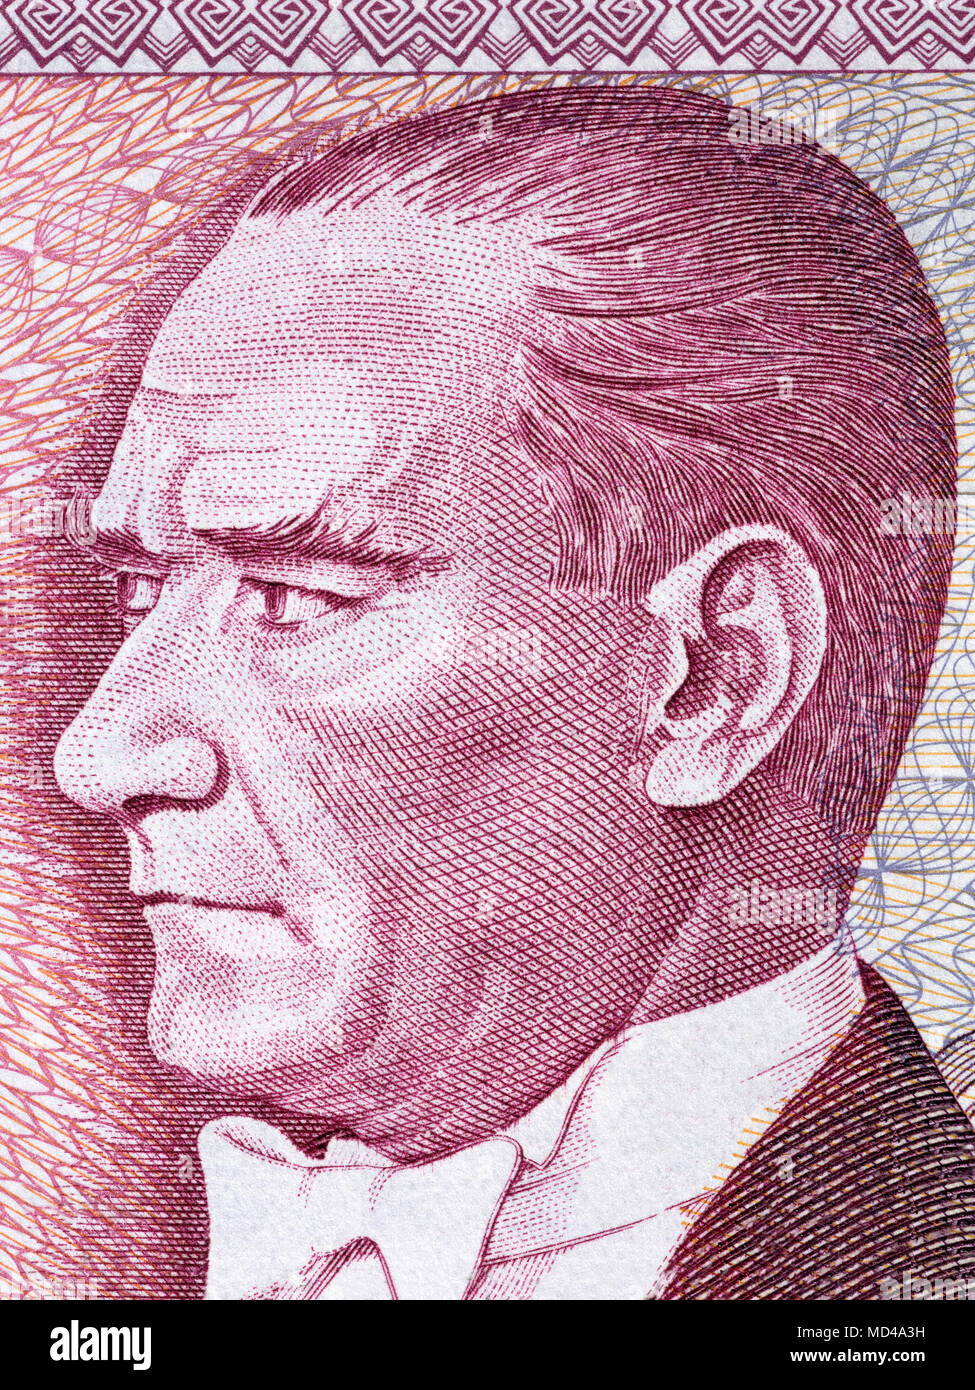 Mustafa Kemal Ataturk portrait from Turkish money Stock Photo